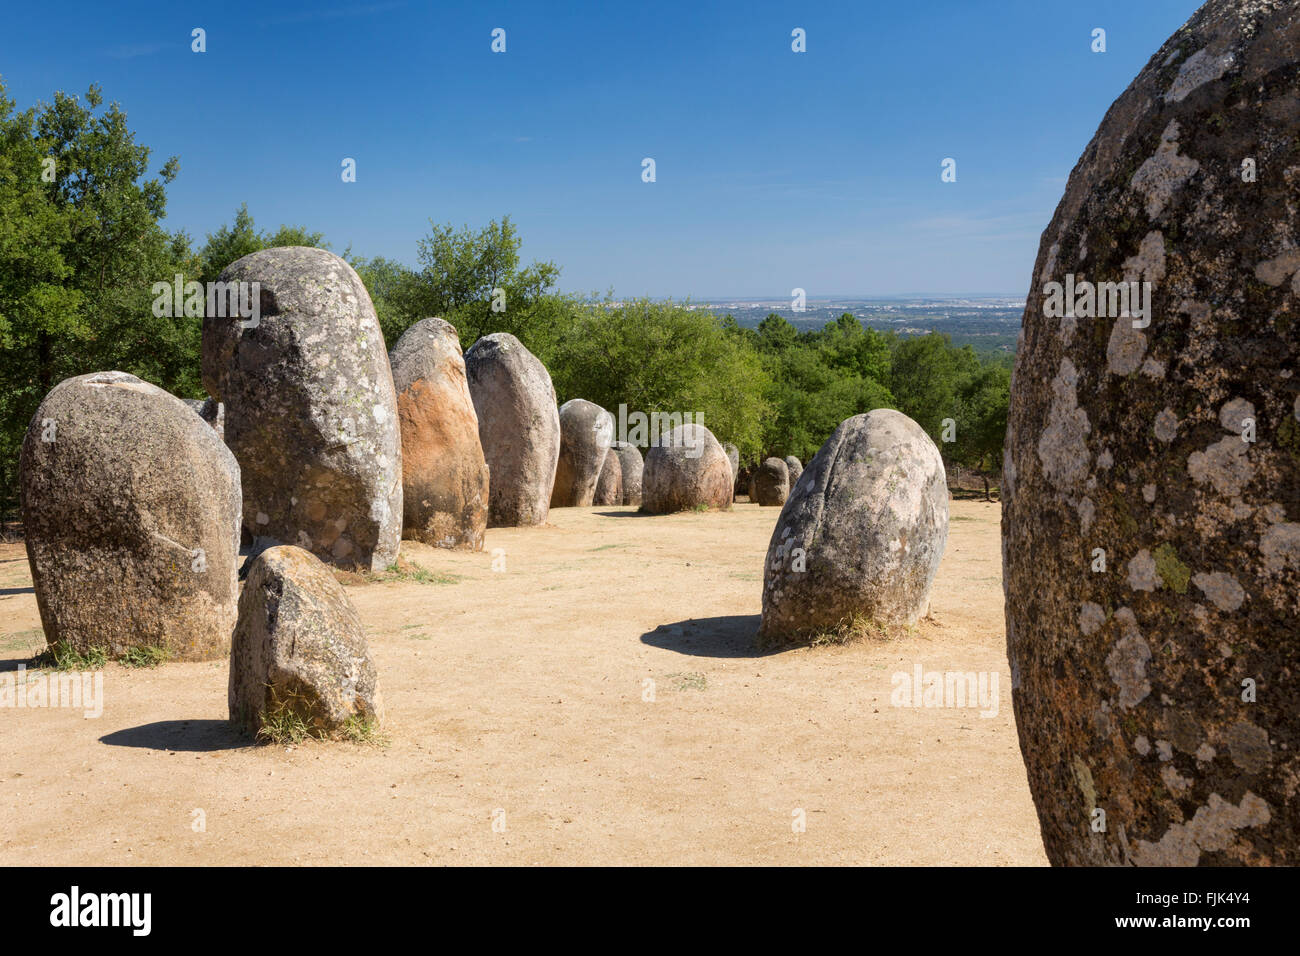 Die Almendes Cromlech, einer prähistorischen neolithische Steinkreis in der Nähe von Evora in der Region Alentejo, Portugal. Europäische Steinzeit Megalithen. Stockfoto